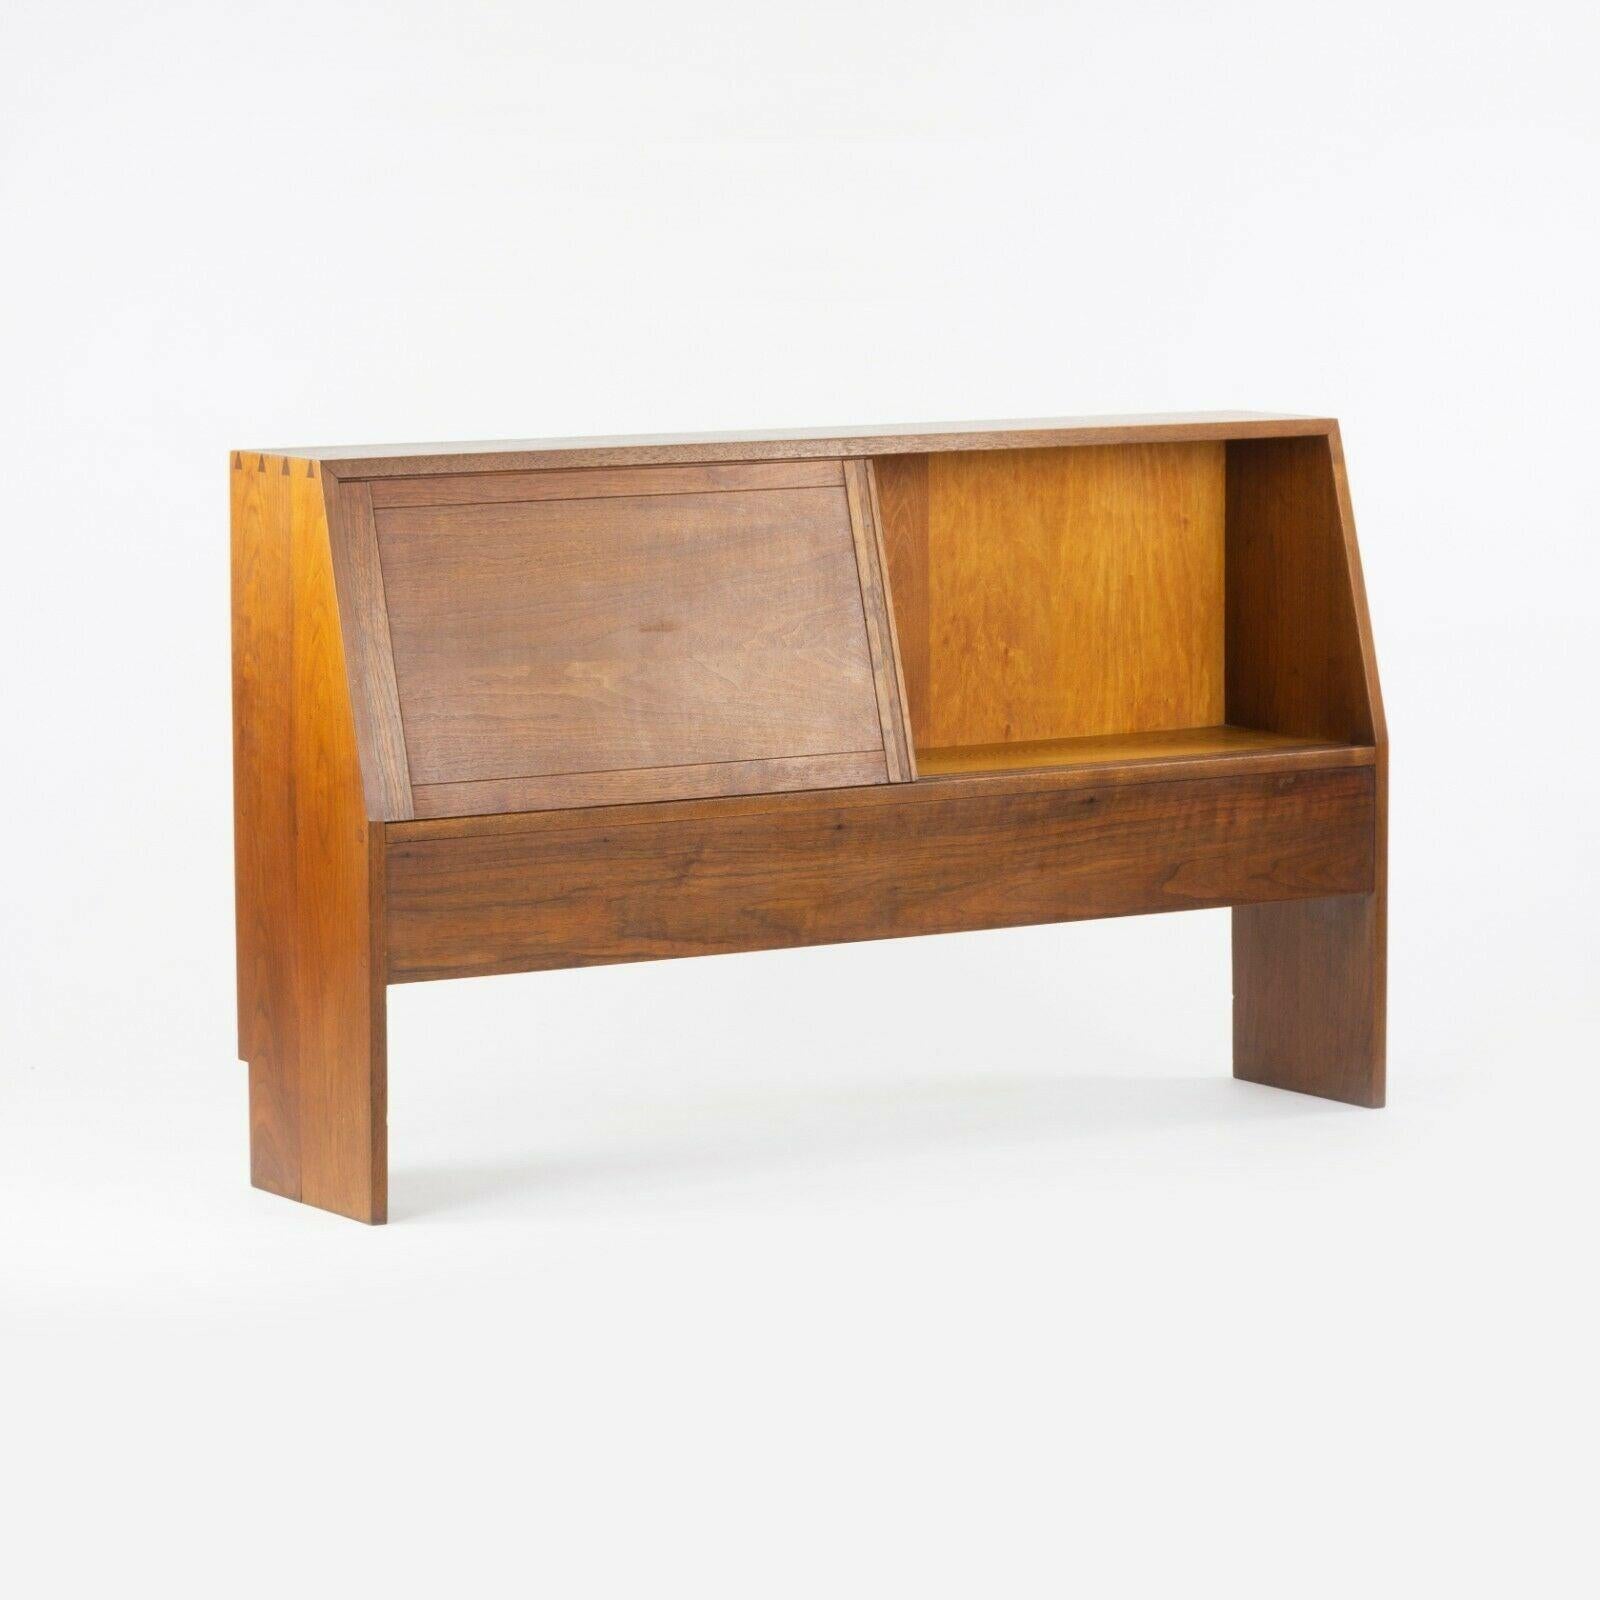 Zum Verkauf steht ein ganz besonderes Kopfteil von George Nakashima aus den 1950er Jahren, hergestellt im Nakashima Woodworking Studio in New Hope, Pennsylvania. Dieses atemberaubende Original ist die Variante mit einem Ablagefach und besteht aus